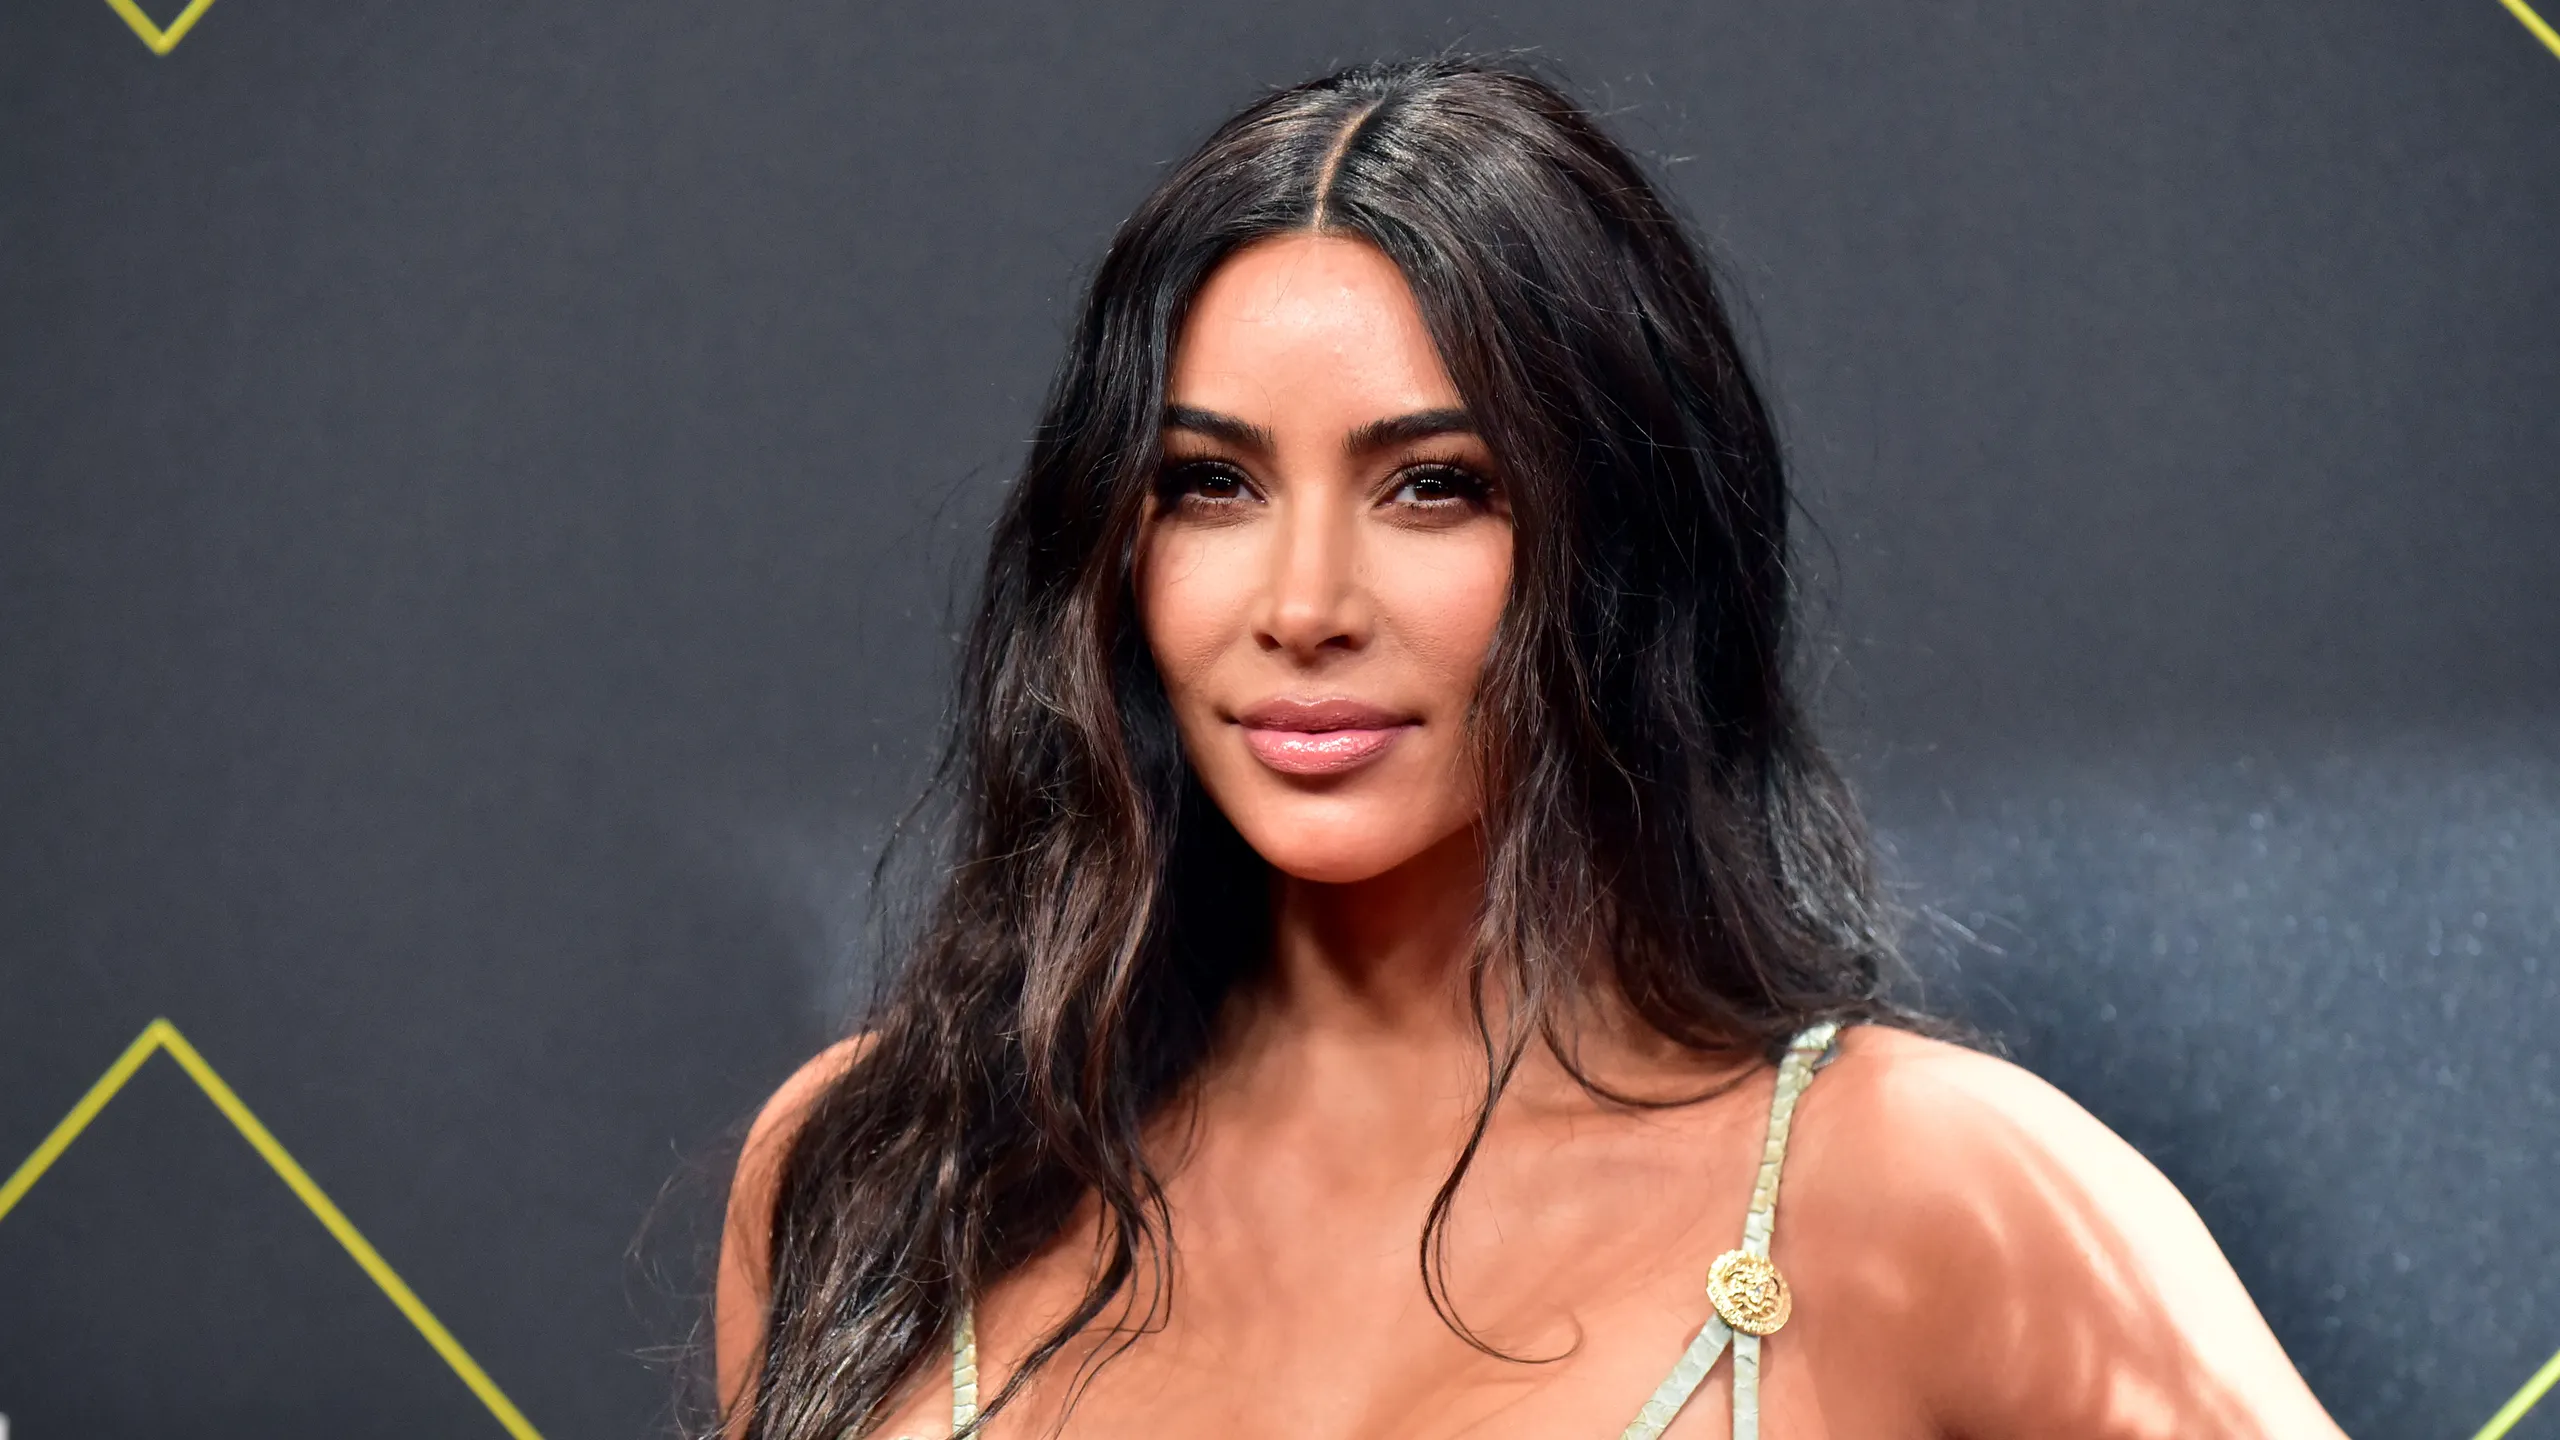 Kim Kardashian ‘thyen’ rrjetin, ekspozon të pasmet bombastike për intervistën 'American Dream'